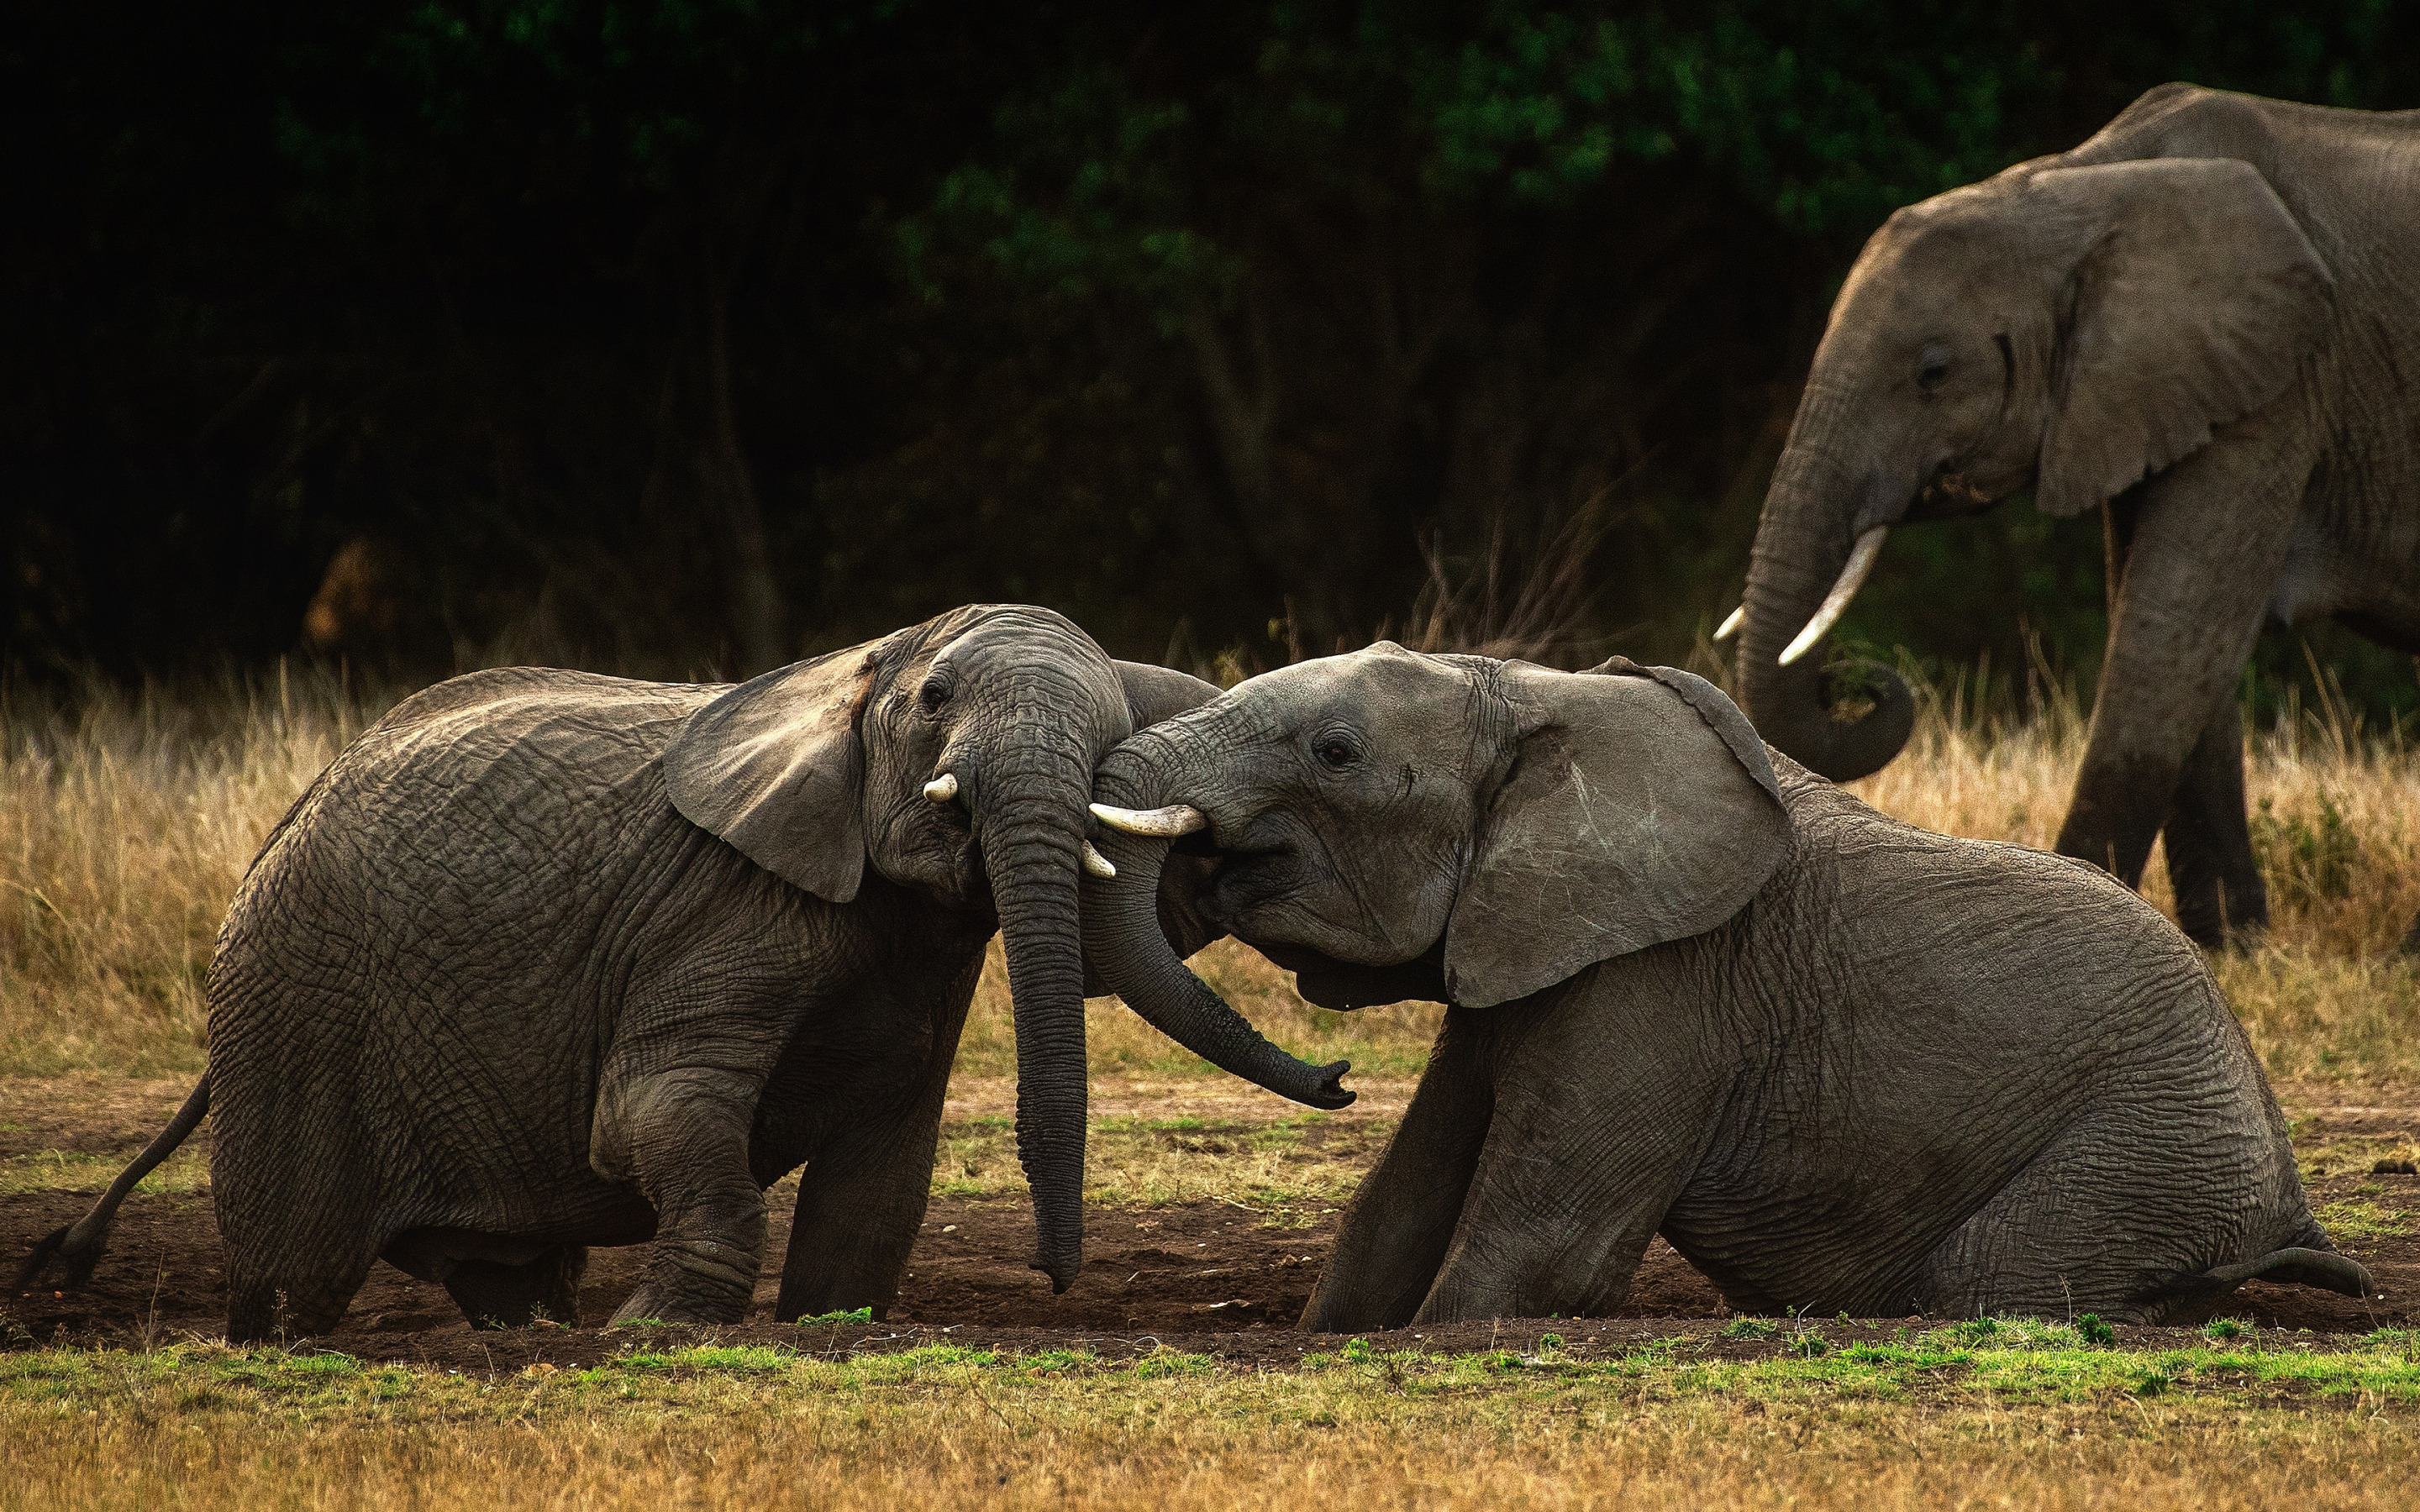 Sister elephant. Слон. Дикие слоны. Слониха со слоненком. Семья слонов.